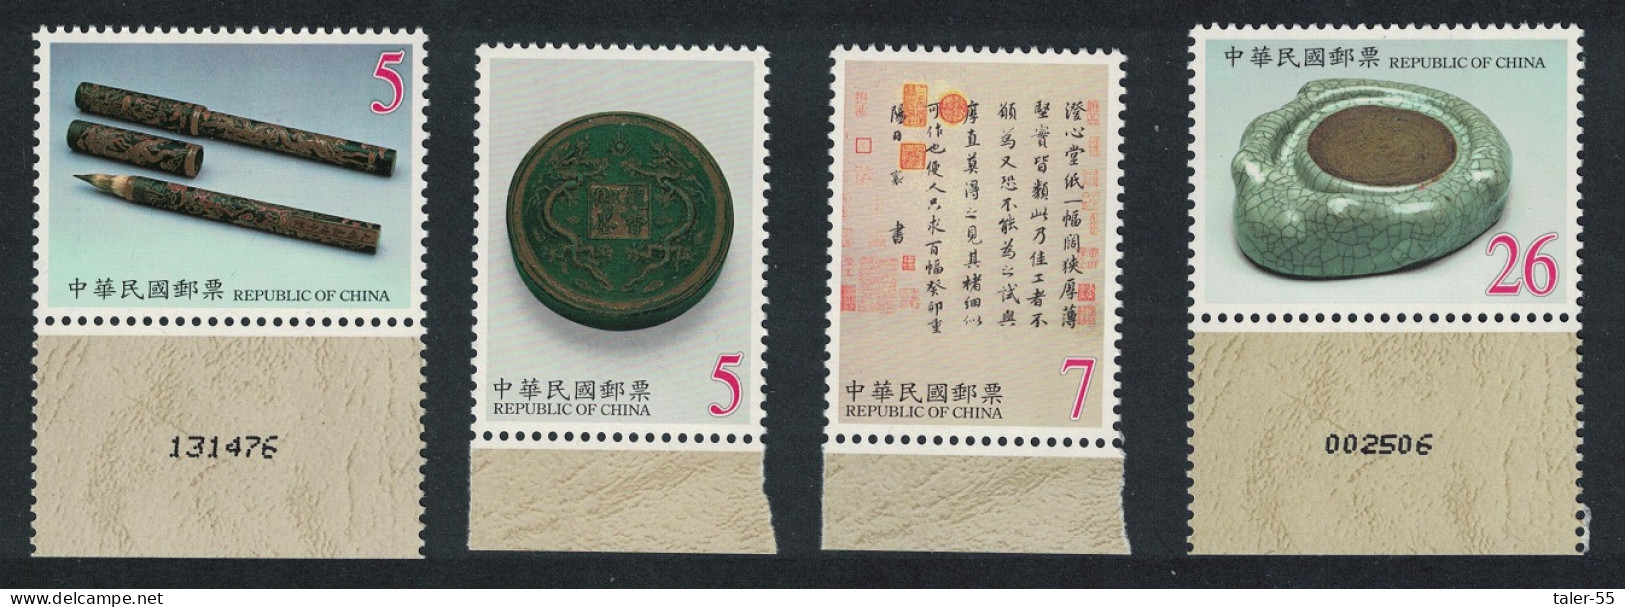 Taiwan Traditional Chinese Writing Equipment 4v Margins 2000 MNH SG#2616-2619 - Ongebruikt